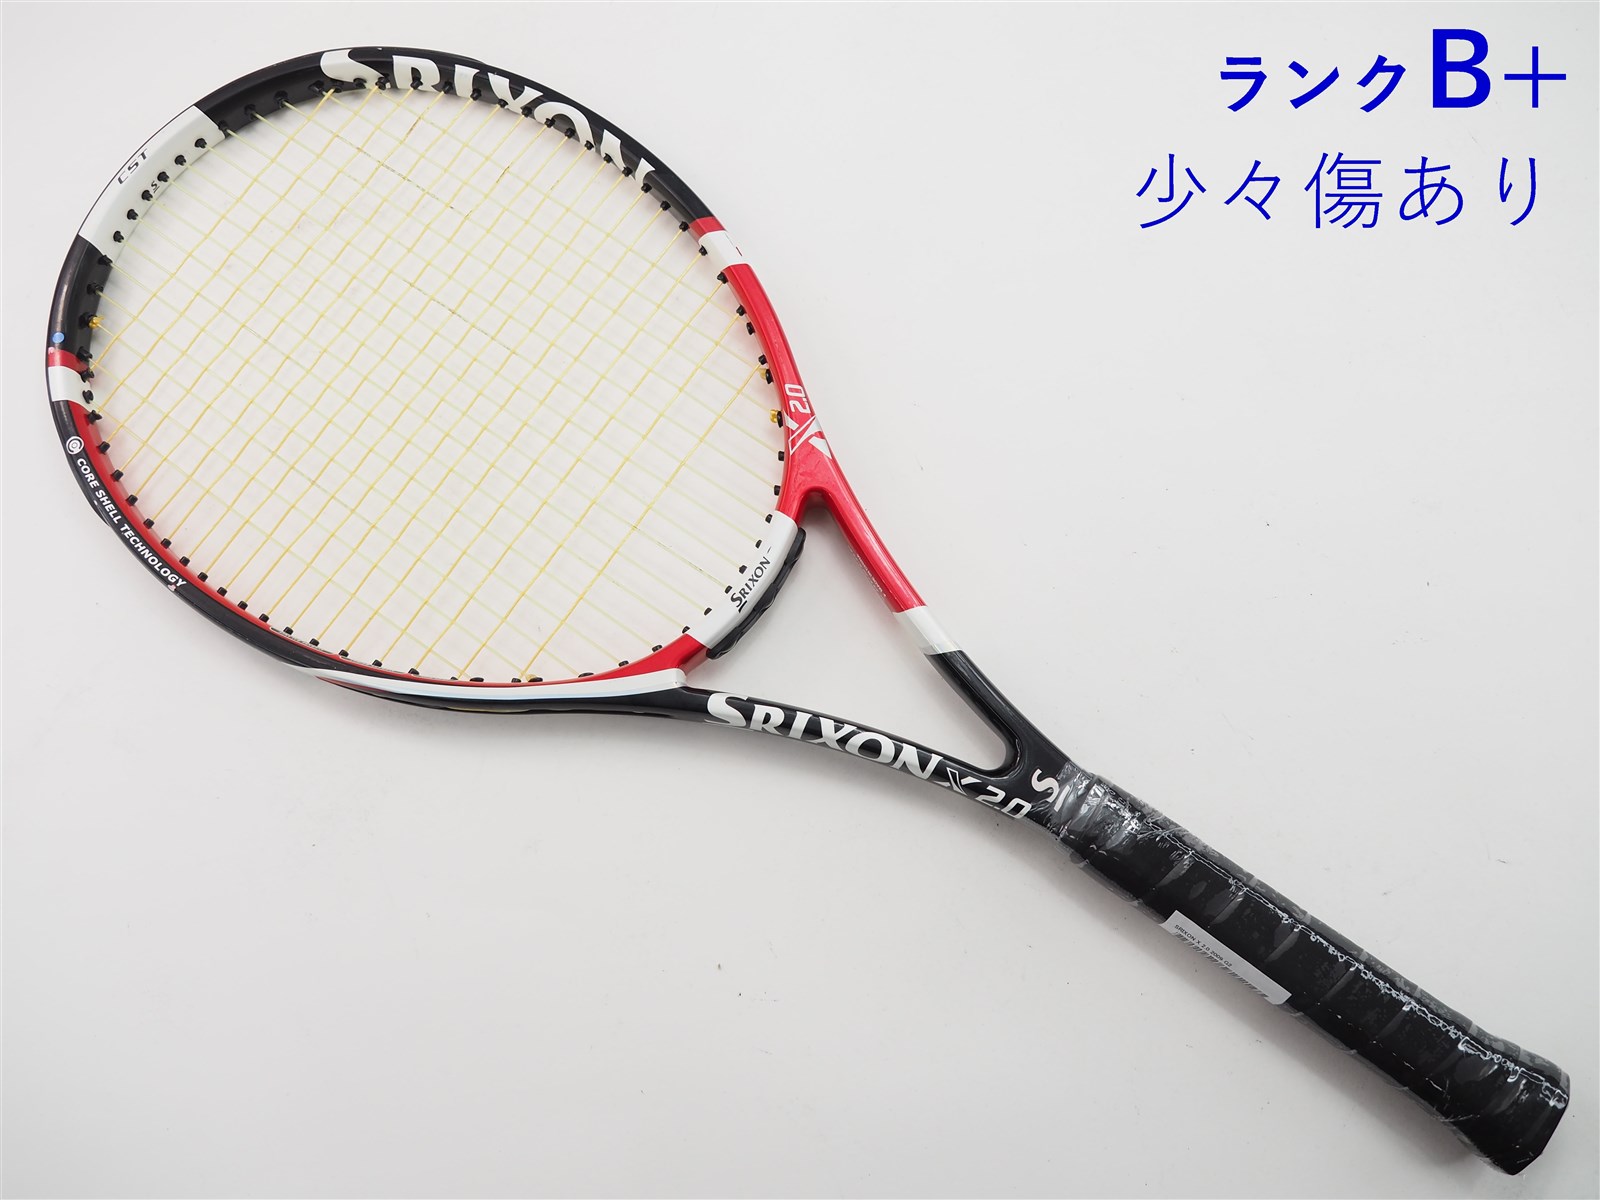 テニスラケット スリクソン レヴォ エックス 2.0 ツアー 2013年モデル (G3)SRIXON REVO X 2.0 TOUR 201320-20-19mm重量